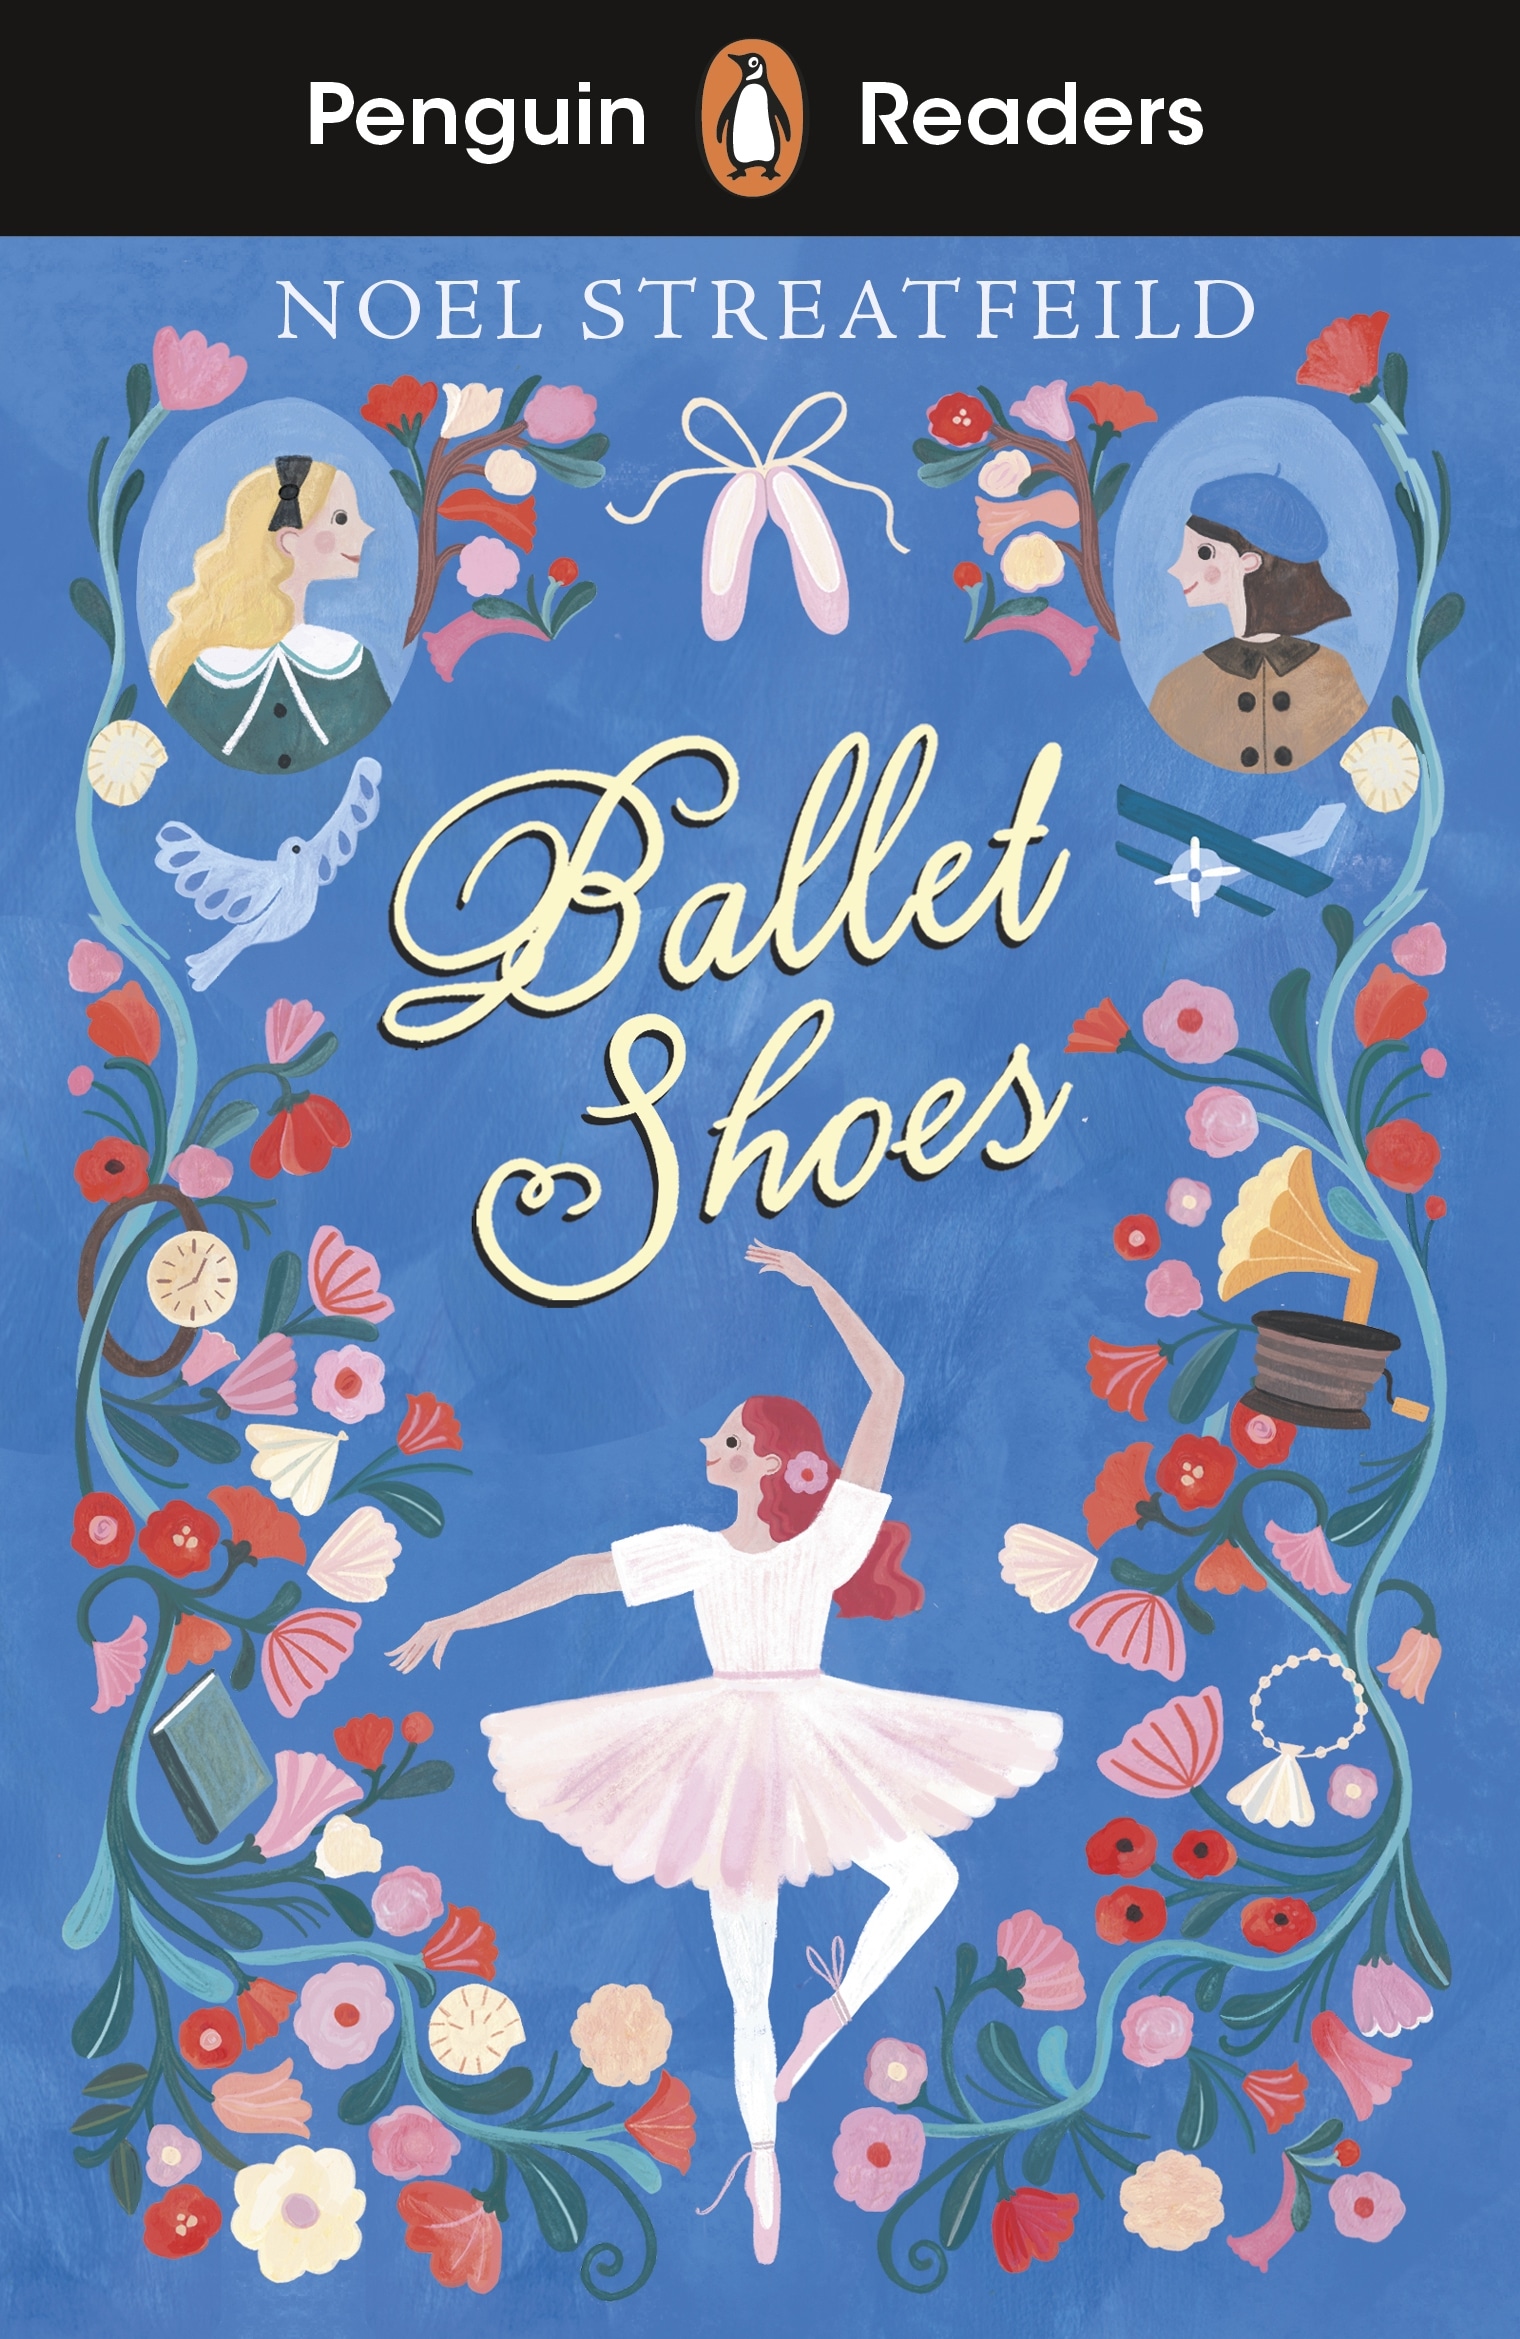 Book “Penguin Readers Level 2: Ballet Shoes (ELT Graded Reader)” by Noel Streatfeild — September 30, 2021